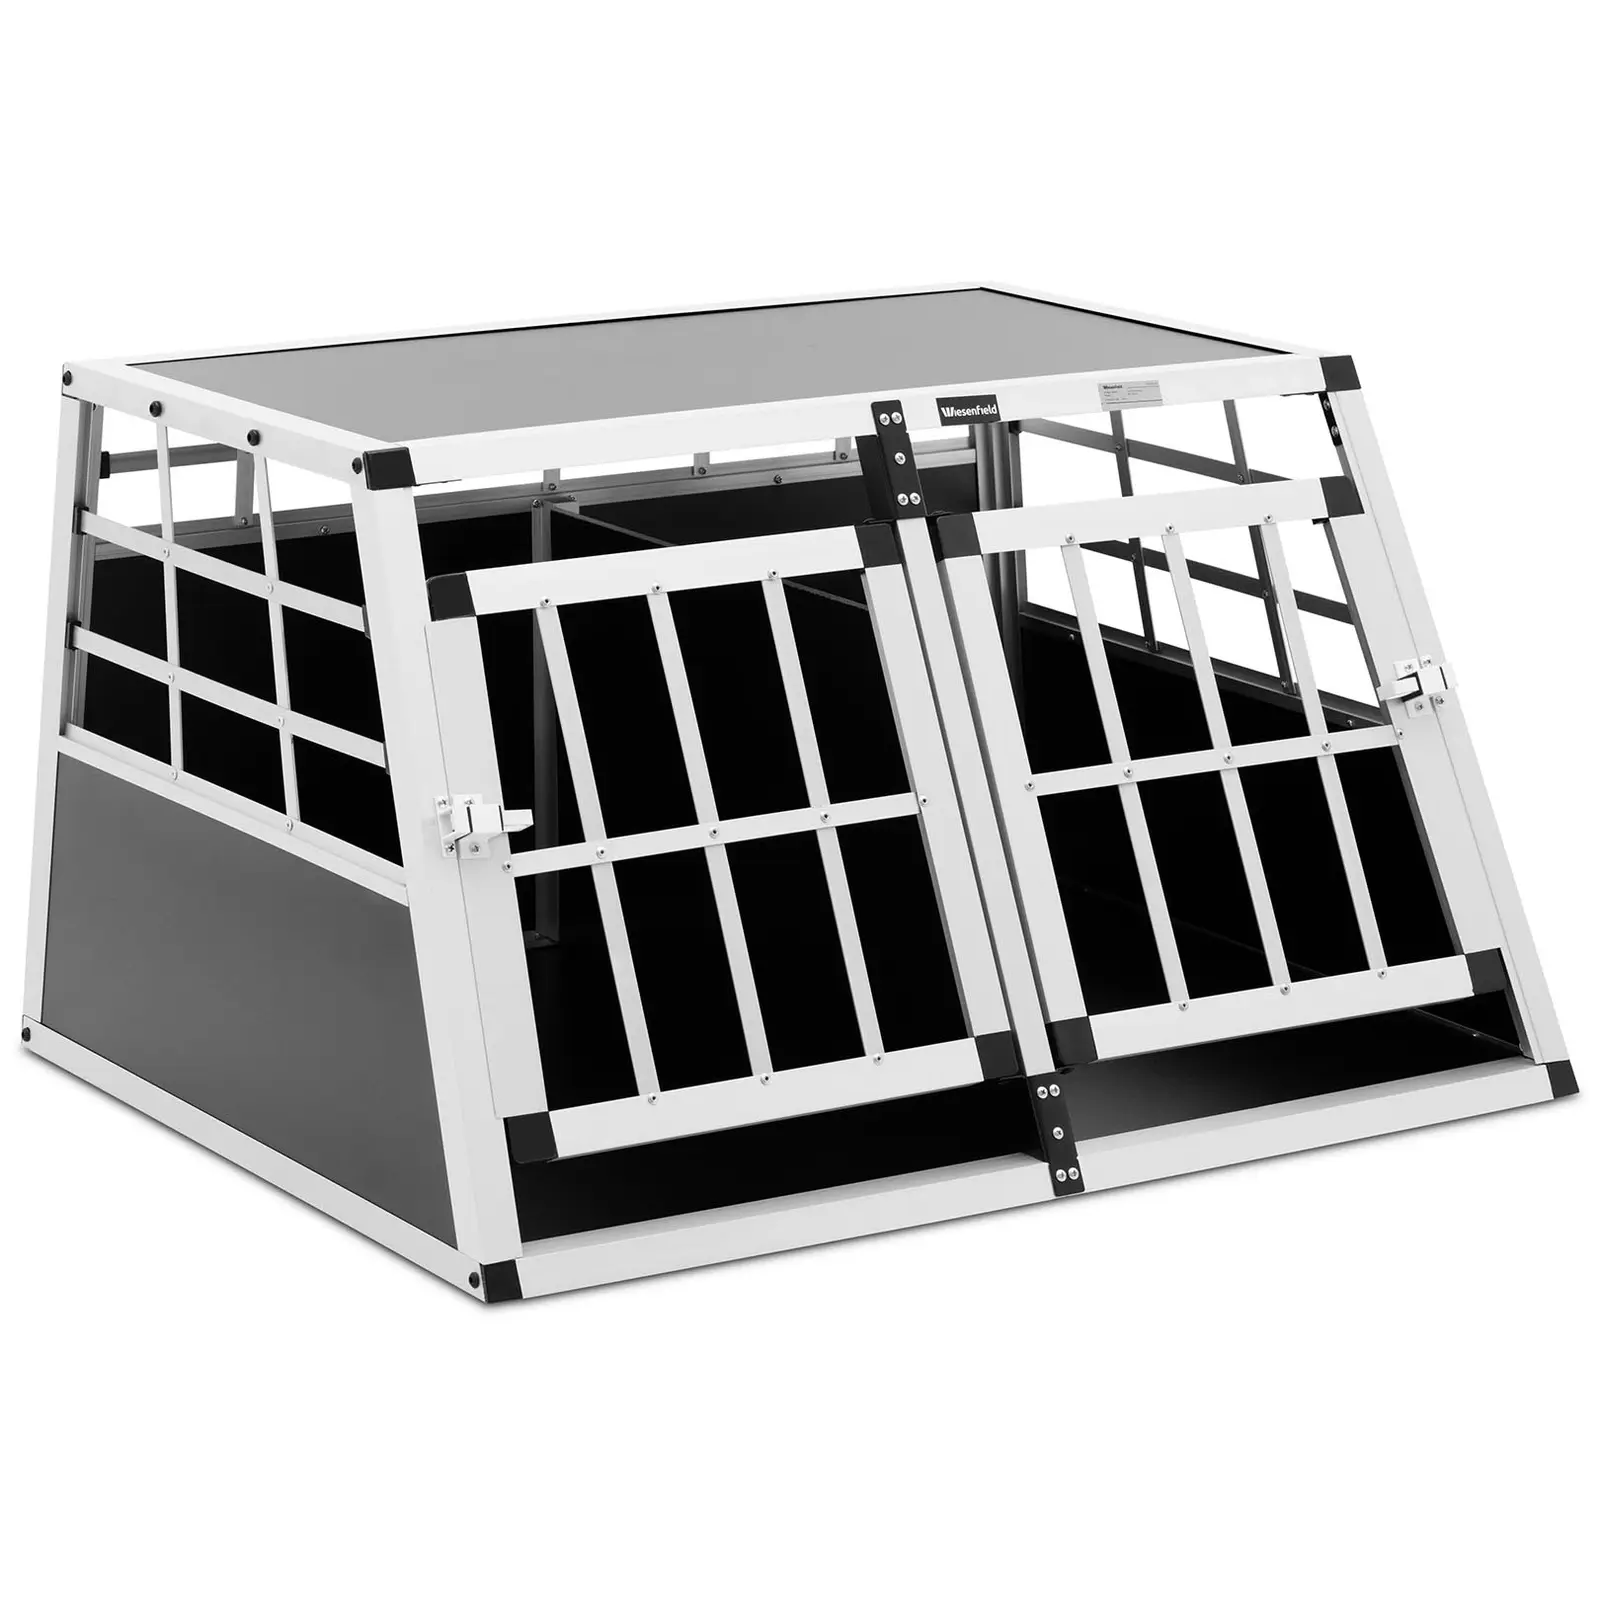 Přepravní box pro psa - hliník - sešikmený tvar - 70 x 90 x 50 cm - s přepážkou